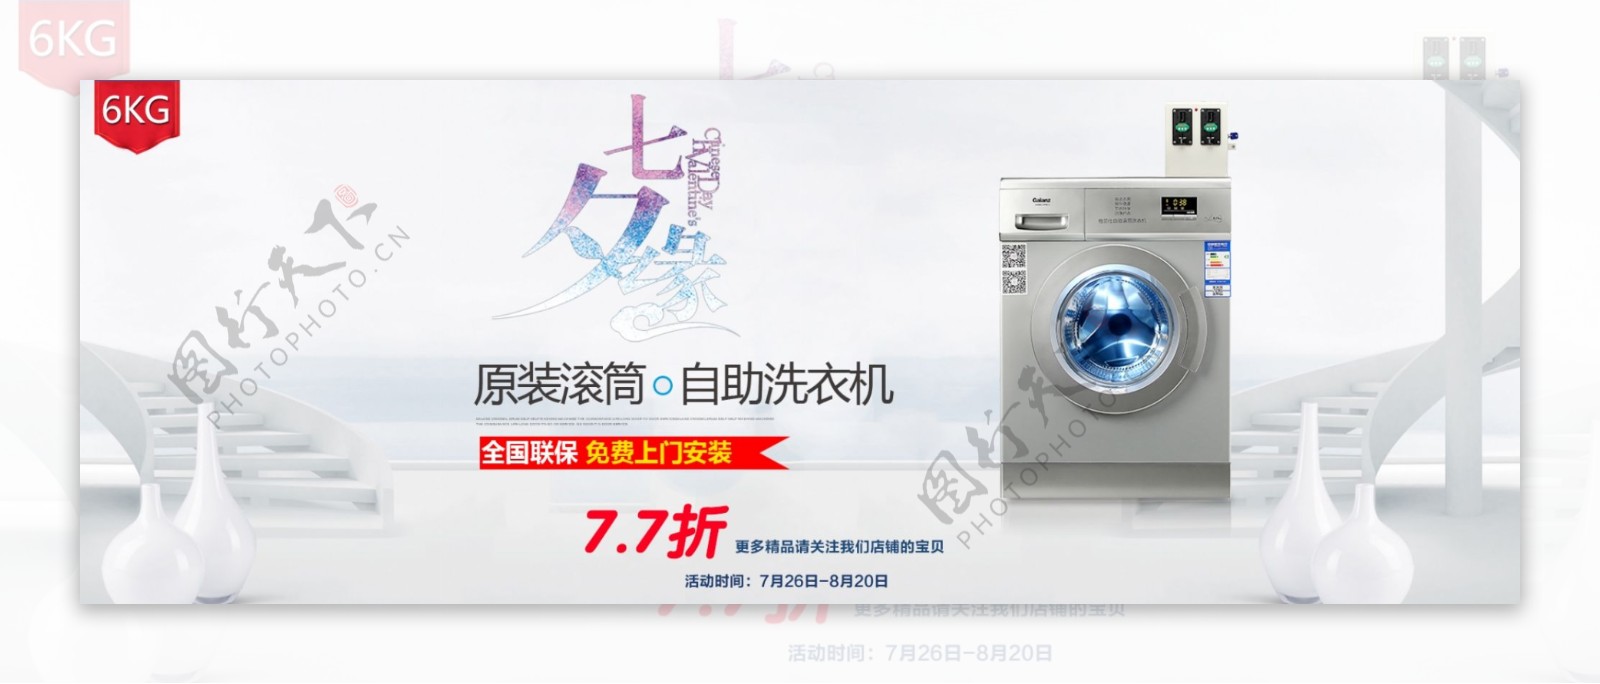 七夕品牌活动洗衣机电器天猫淘宝首页海报